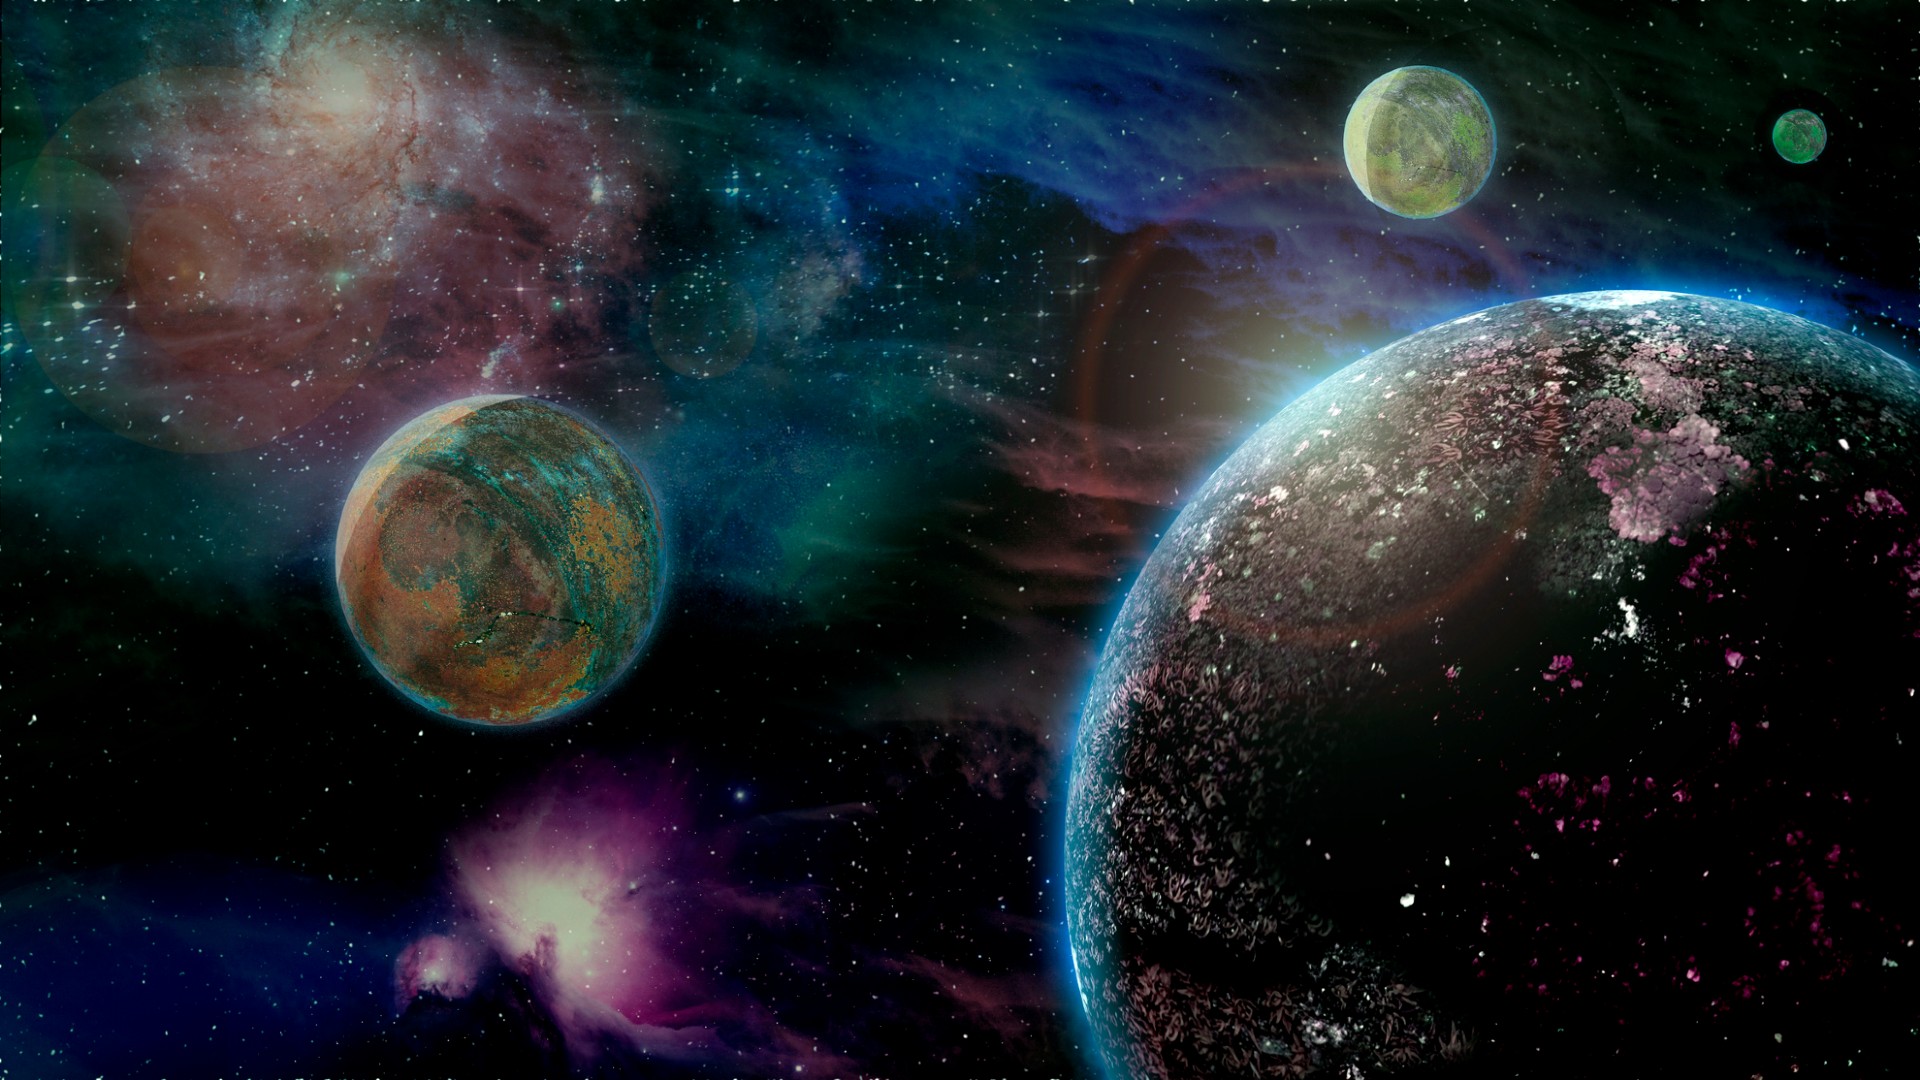 cuatro planetas verdosos en el espacio exterior